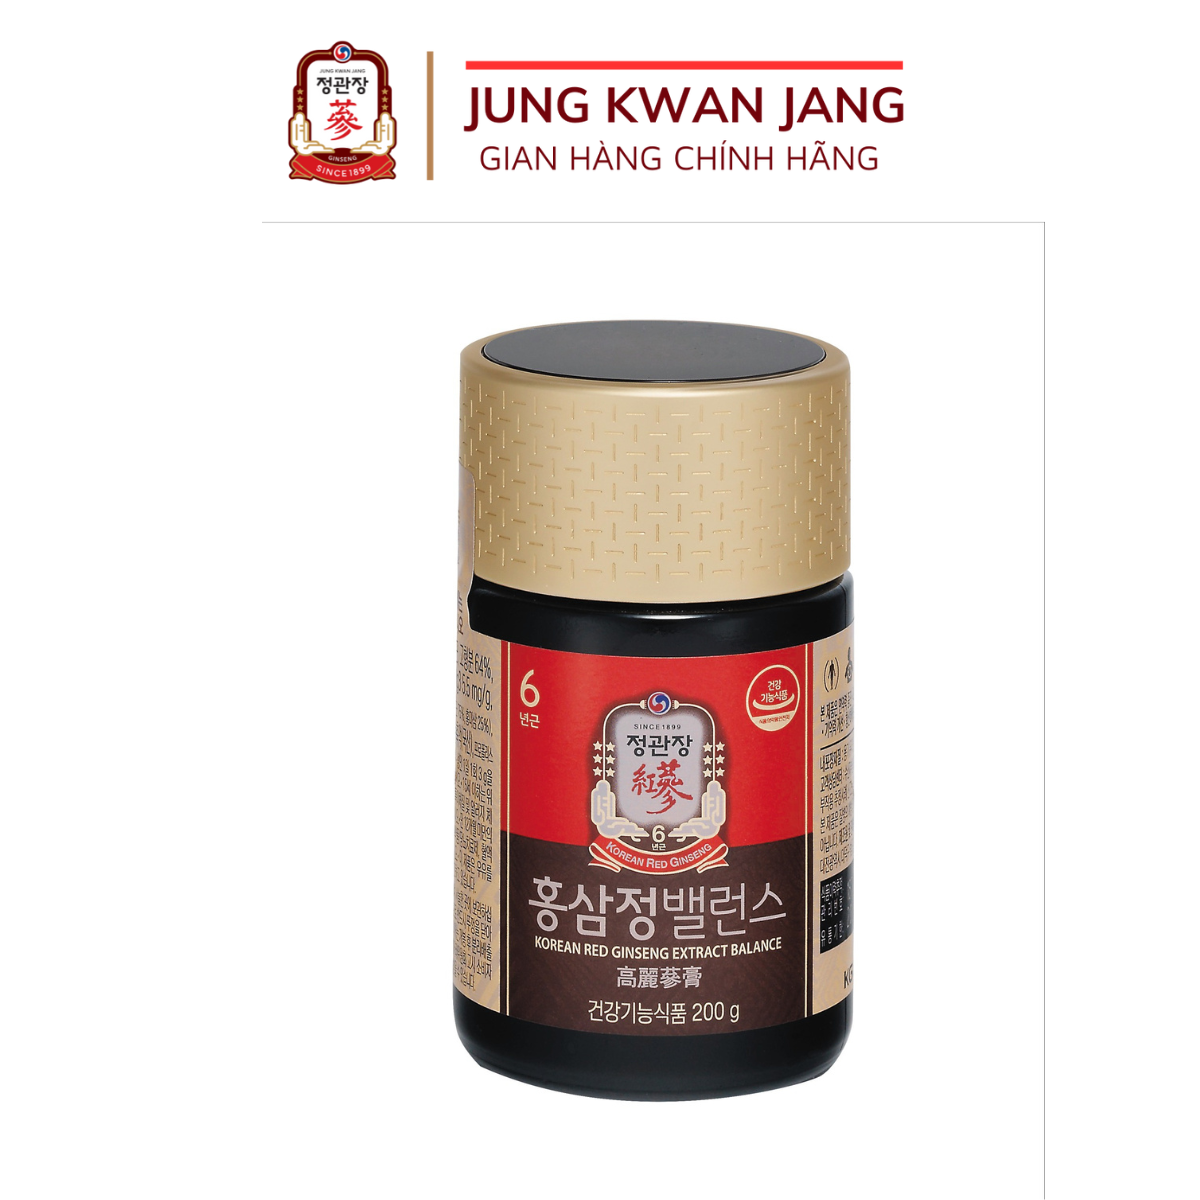 Tinh Chất Hồng Sâm Hàn Quốc Cô Đặc KGC Jung Kwan Jang Extract Balance (hũ 200g)